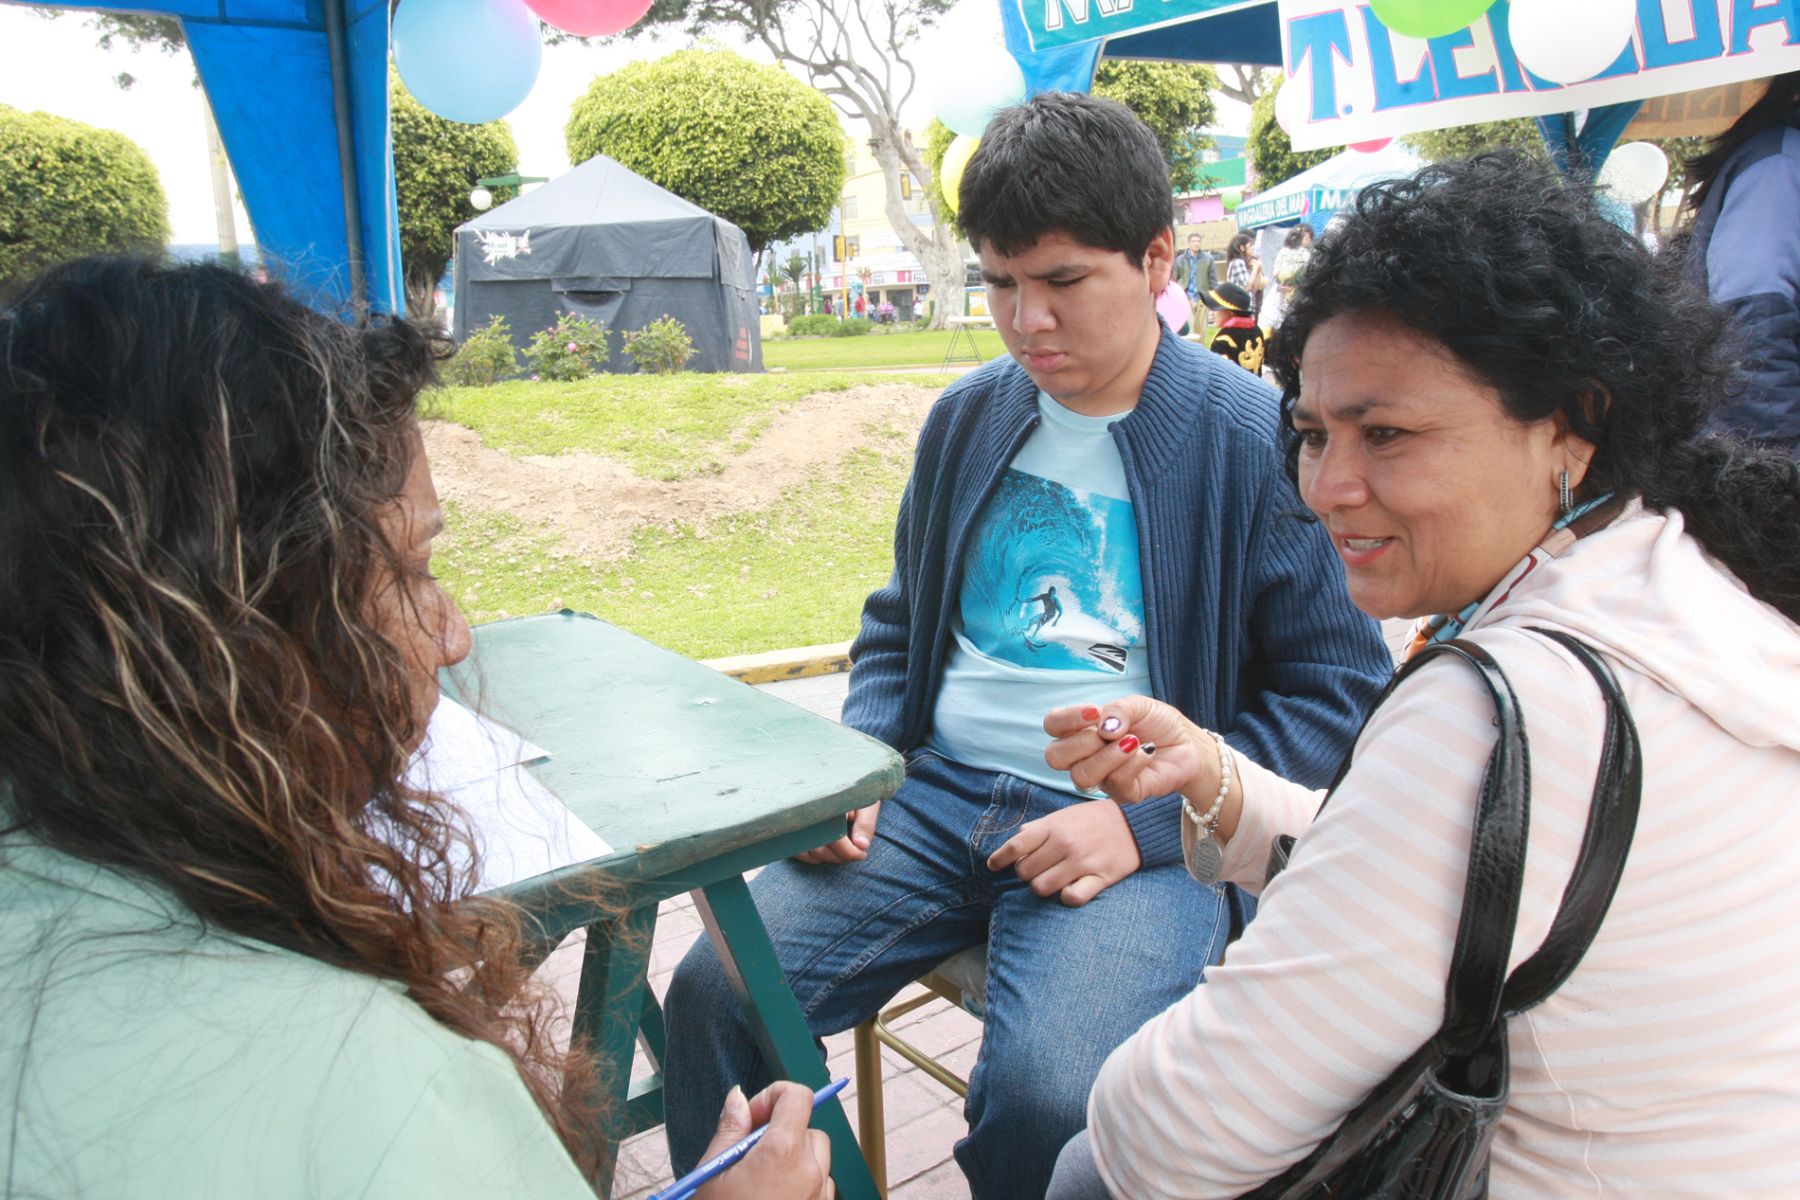 Realizará en enero primera campaña de salud mental gratuita en Barranco. Foto: ANDINA/Archivo.